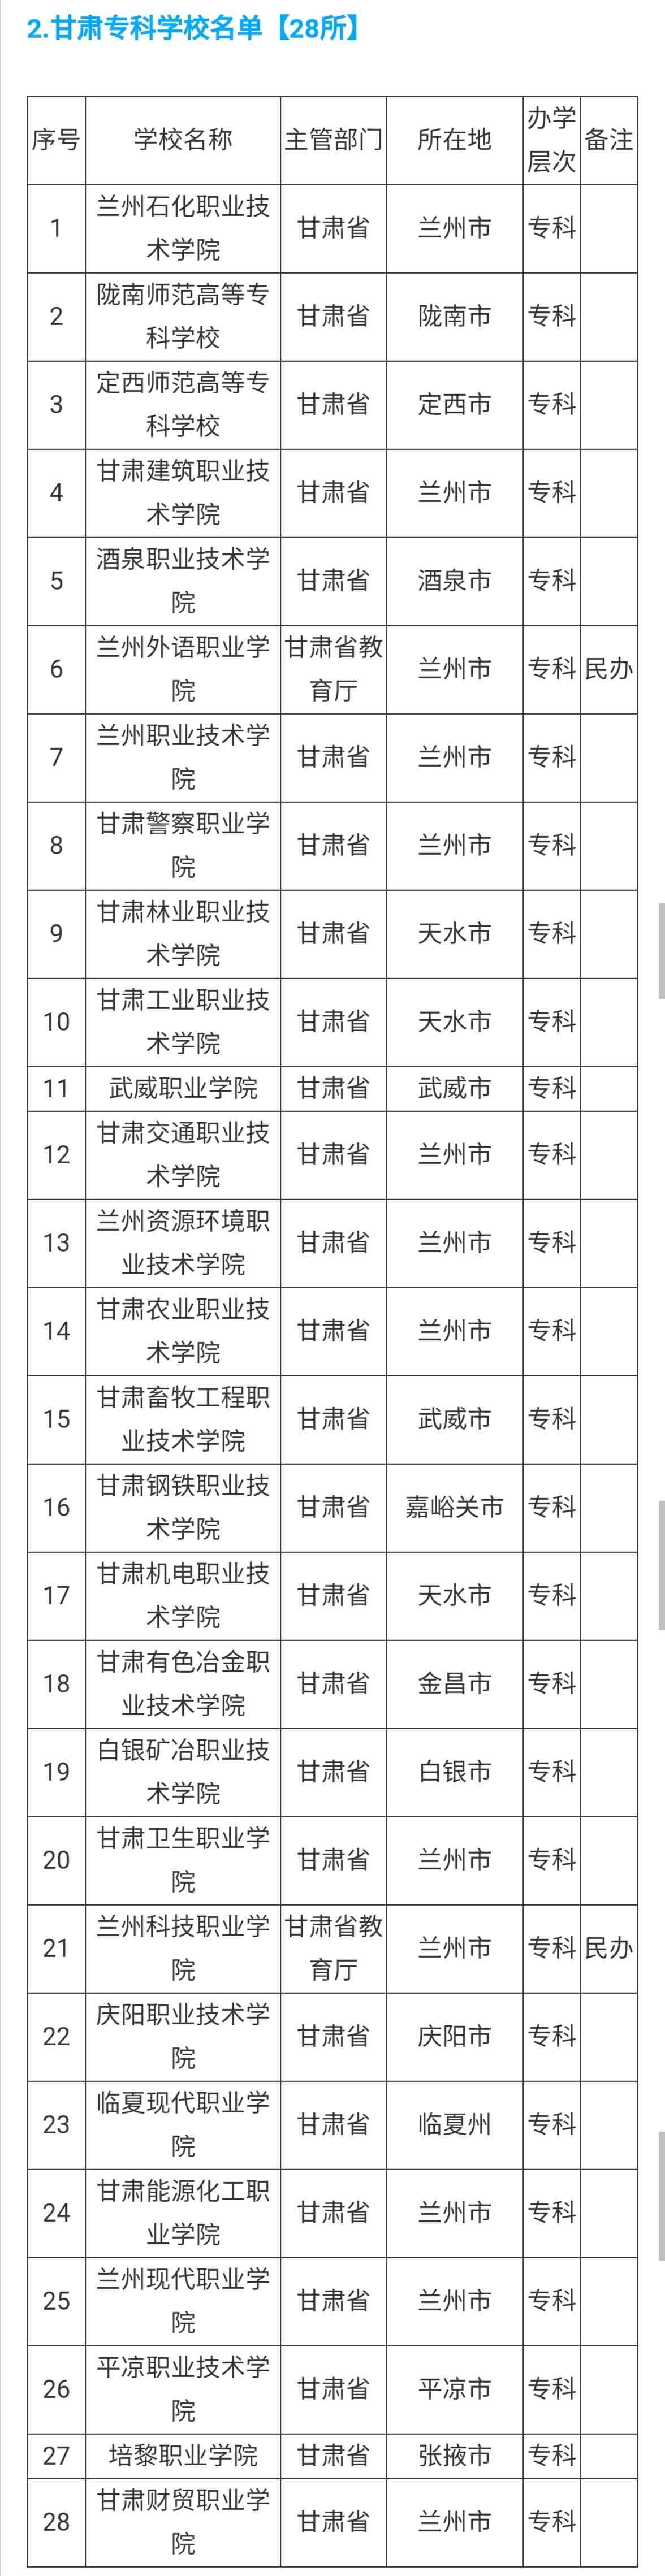 甘肃省和兰州的本专科院校最全名单，高考志愿填报参考